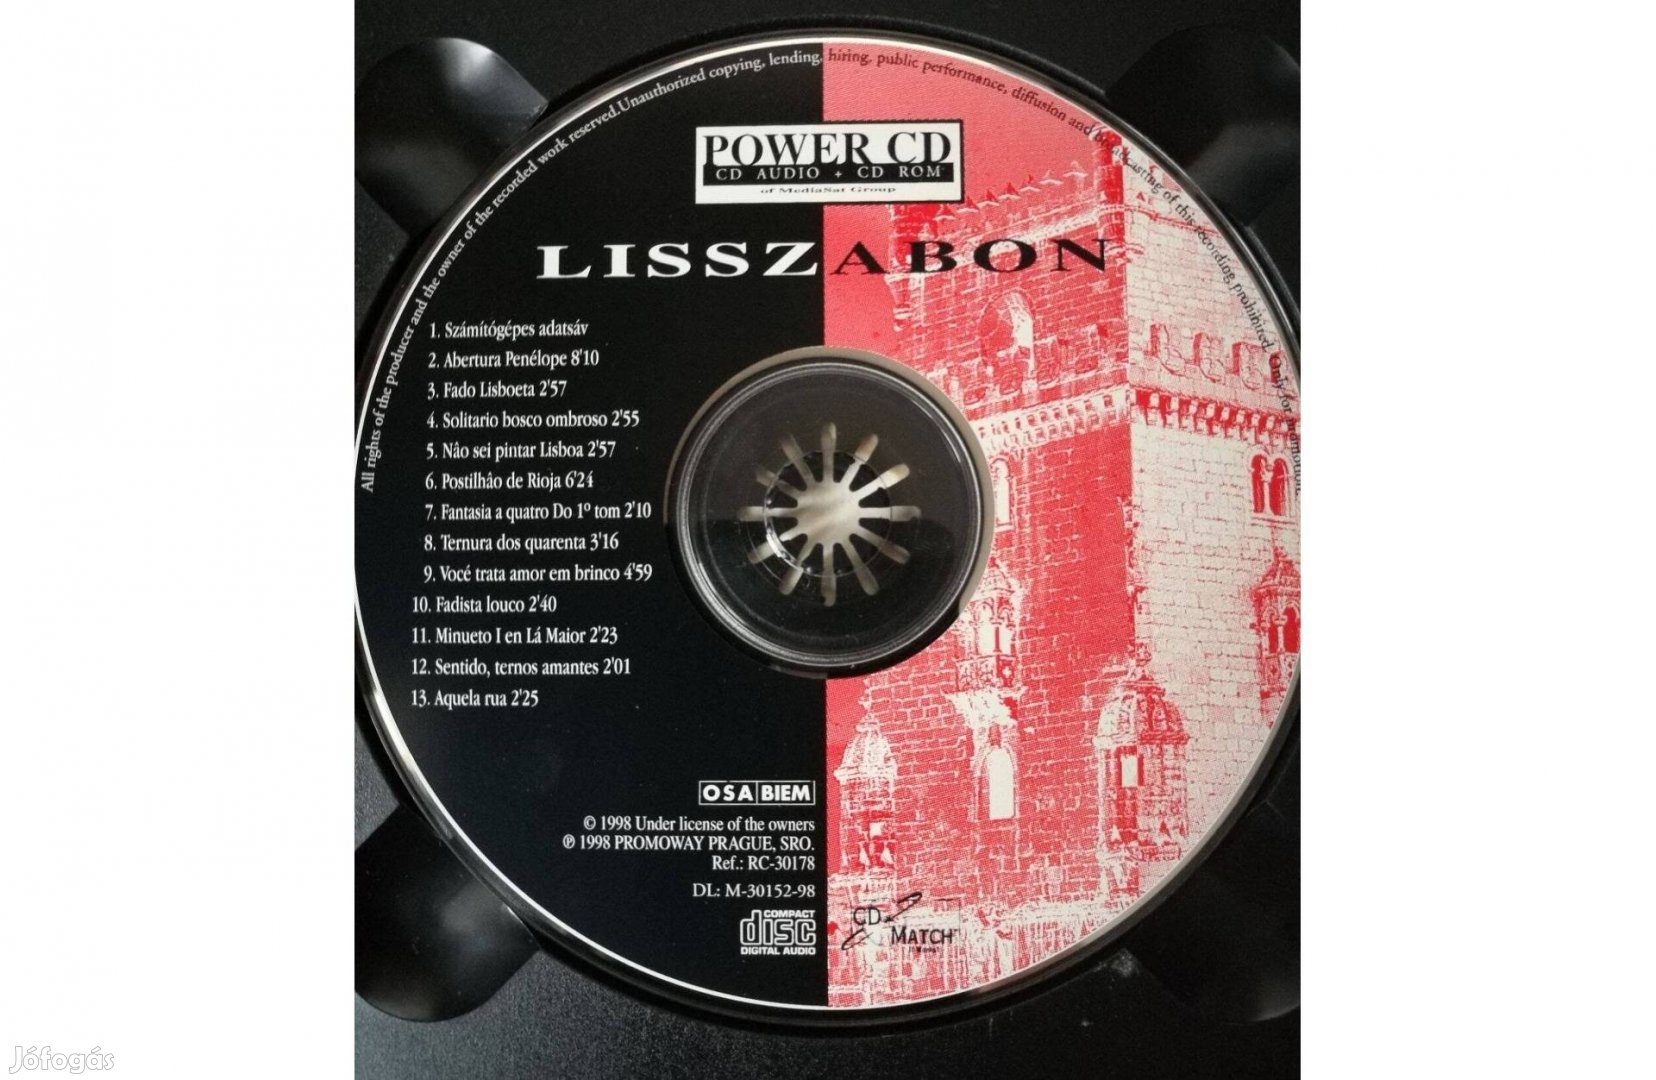 Lisszabon CD